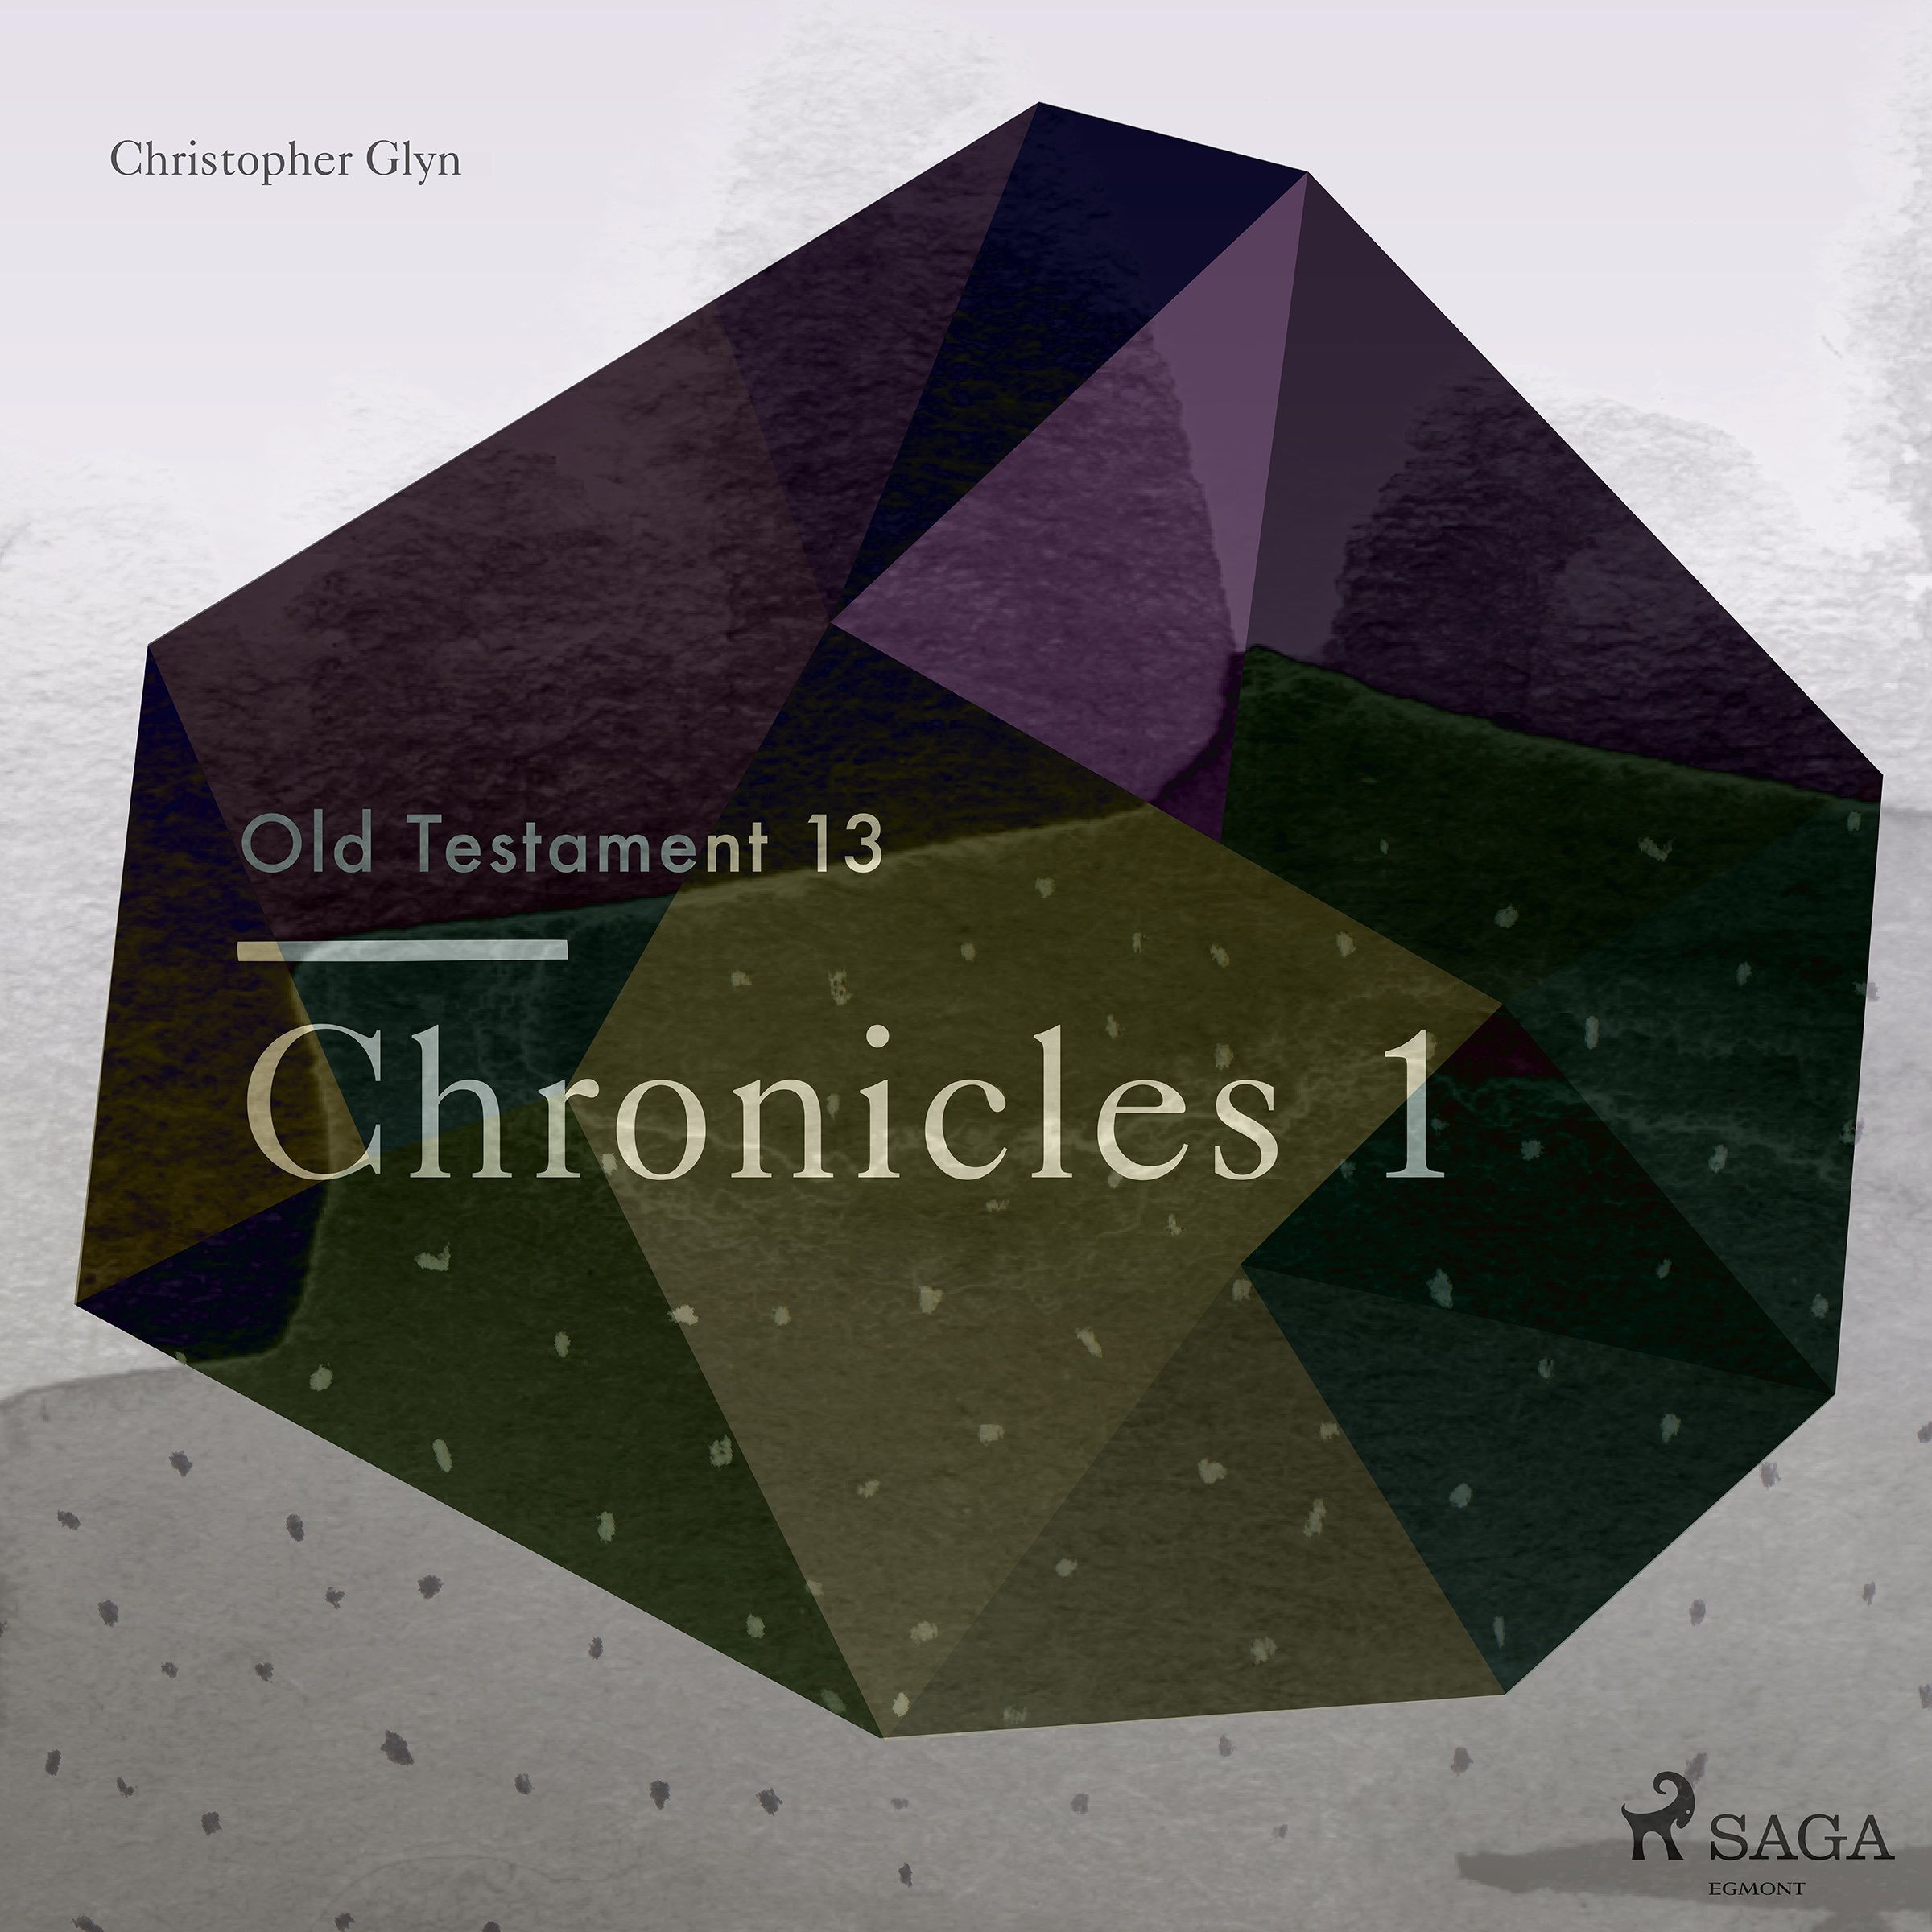 The Old Testament 13 - Chronicles 1, ljudbok av Christopher Glyn